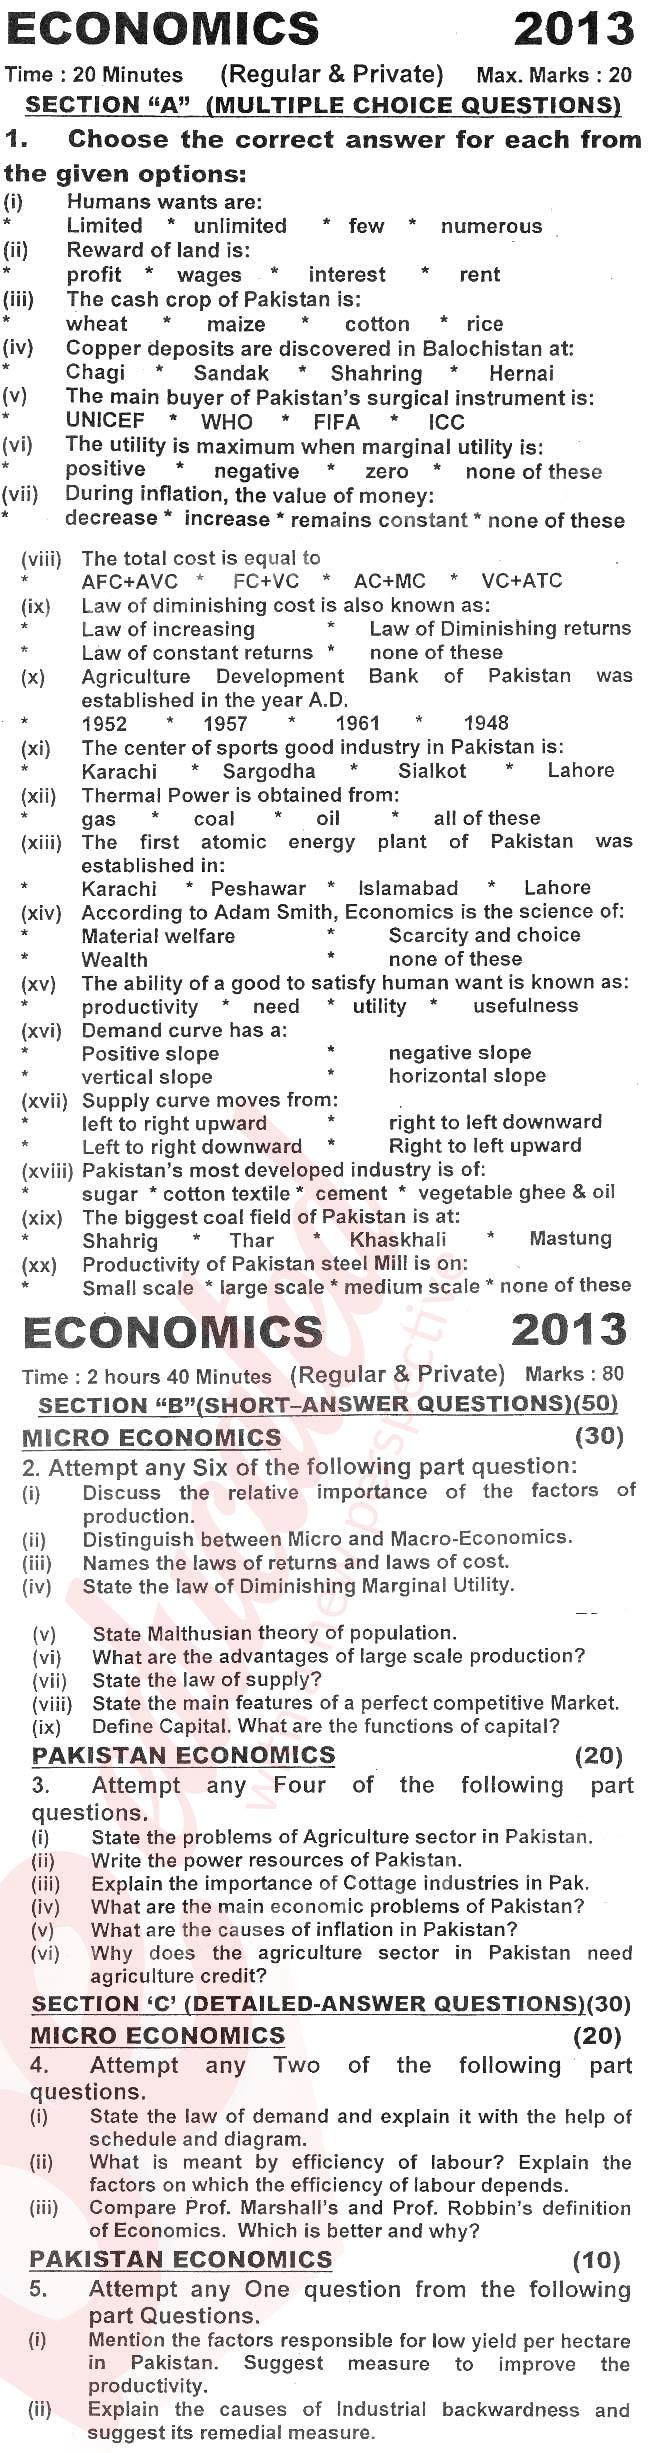 Economics FA Part 1 Past Paper Group 1 KPBTE 2013